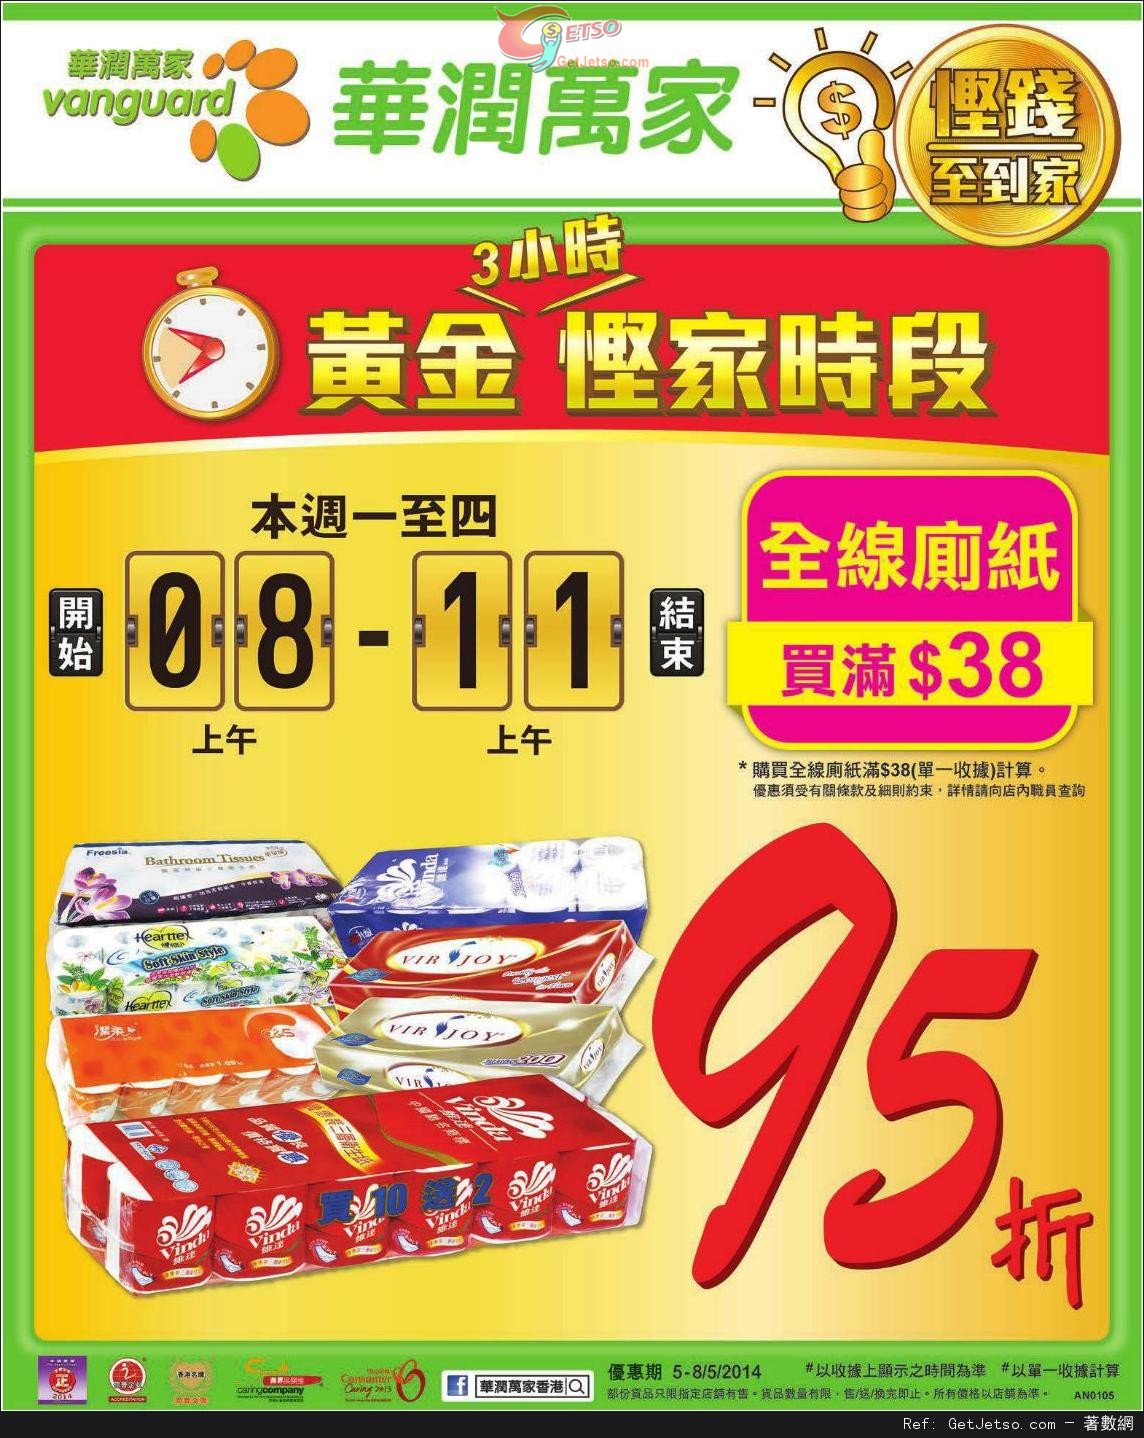 華潤萬家超級市場全線廁紙買滿享95折優惠(至14年5月8日)圖片1